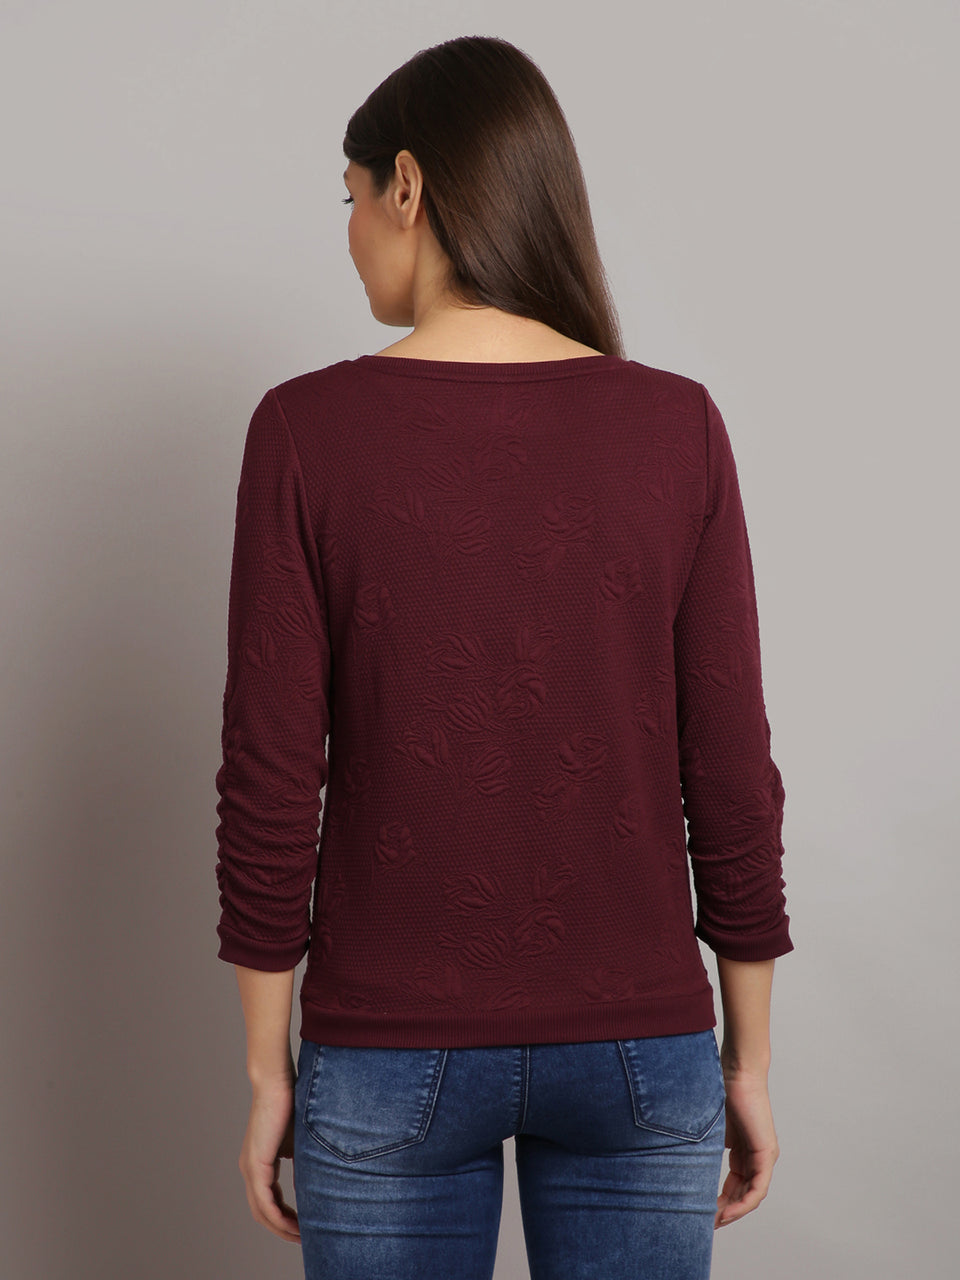 women solid maroon self design pullover sweatshirt